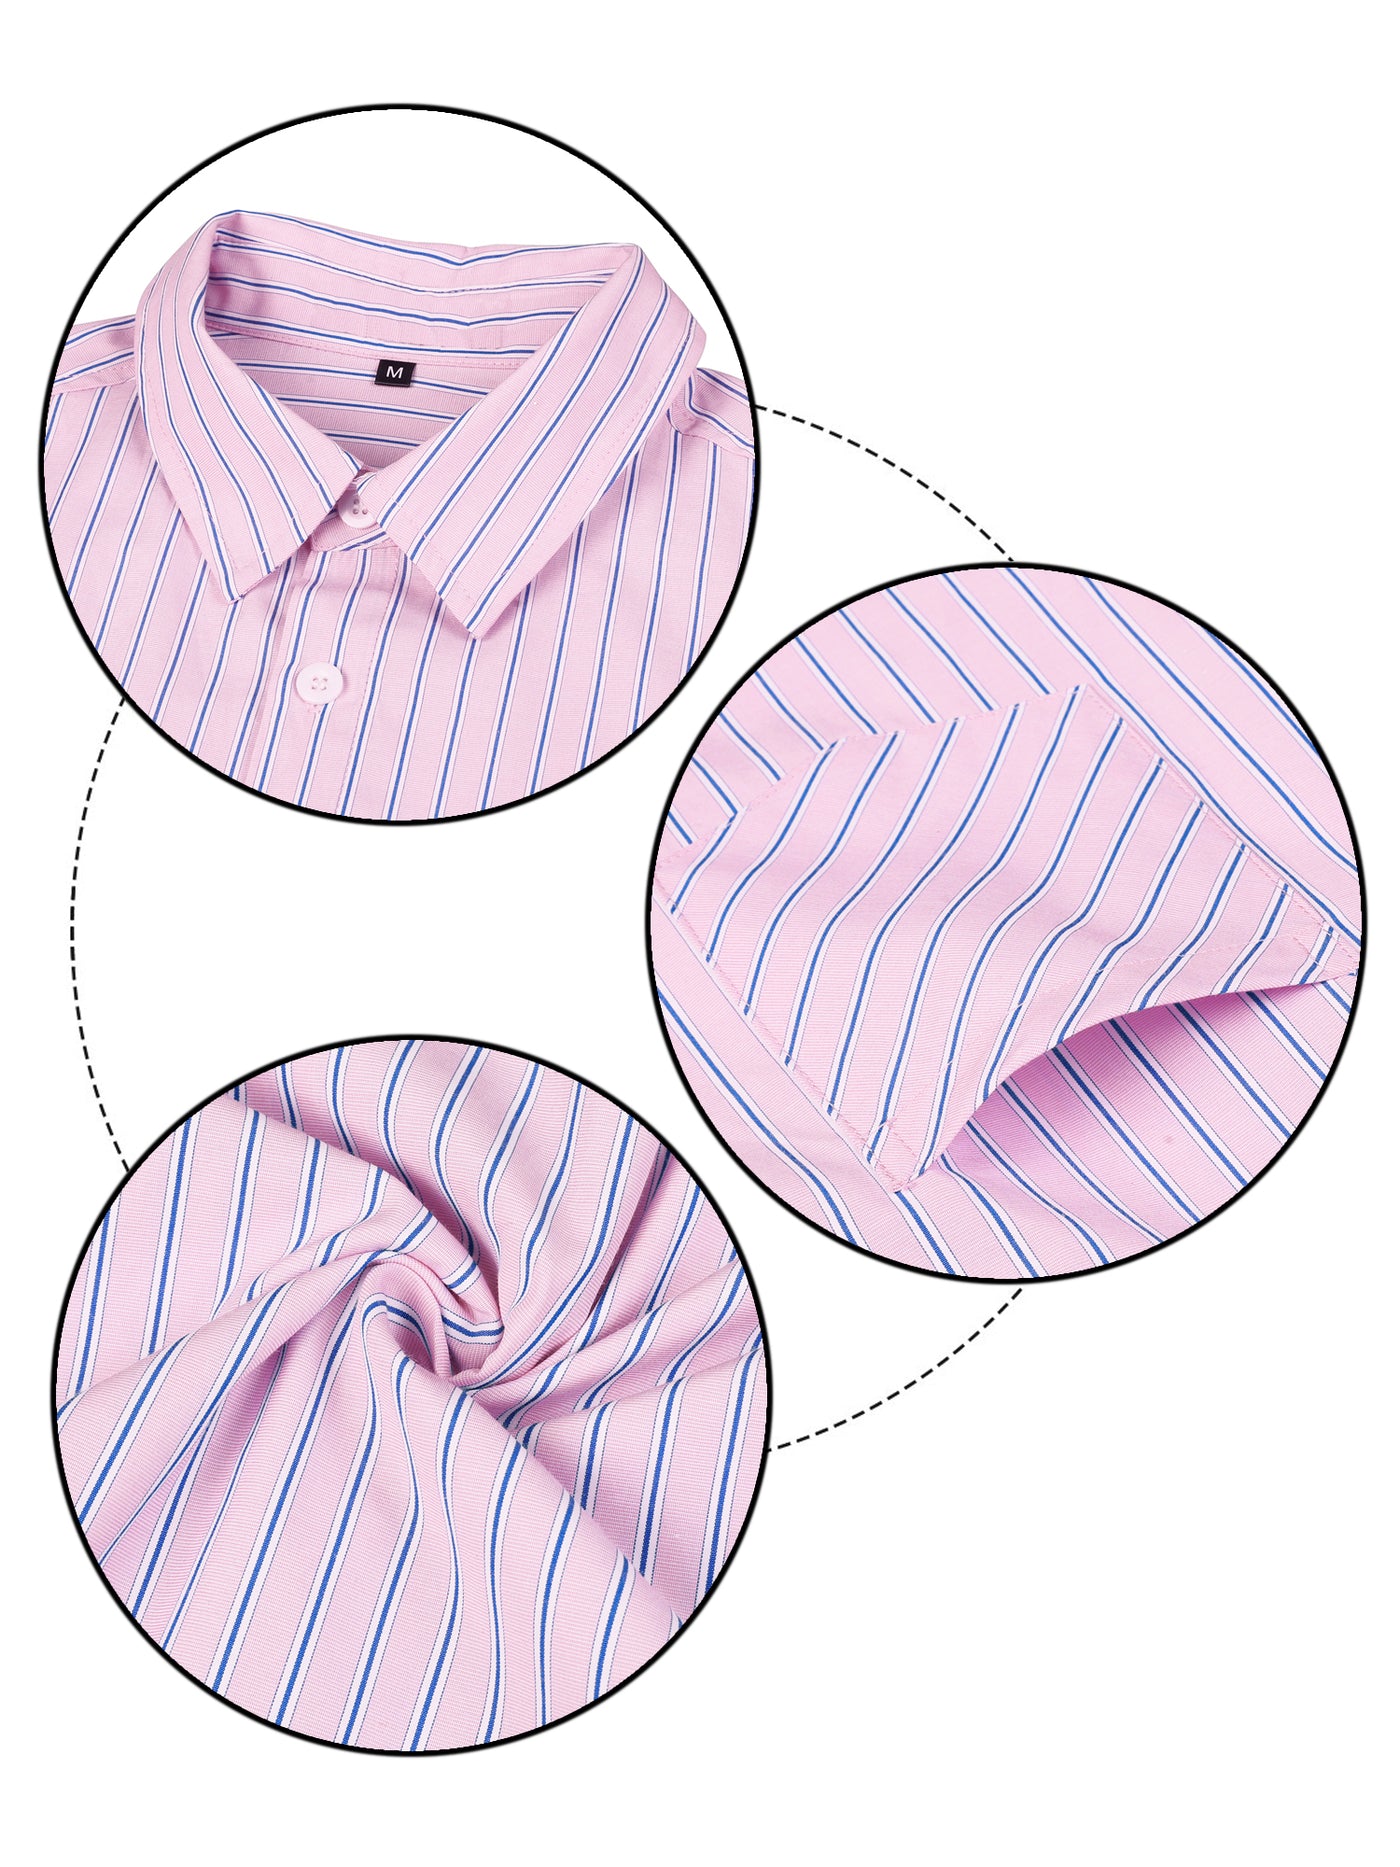 Bublédon Cotton Vertical Striped Short Sleeve Button Up Shirt